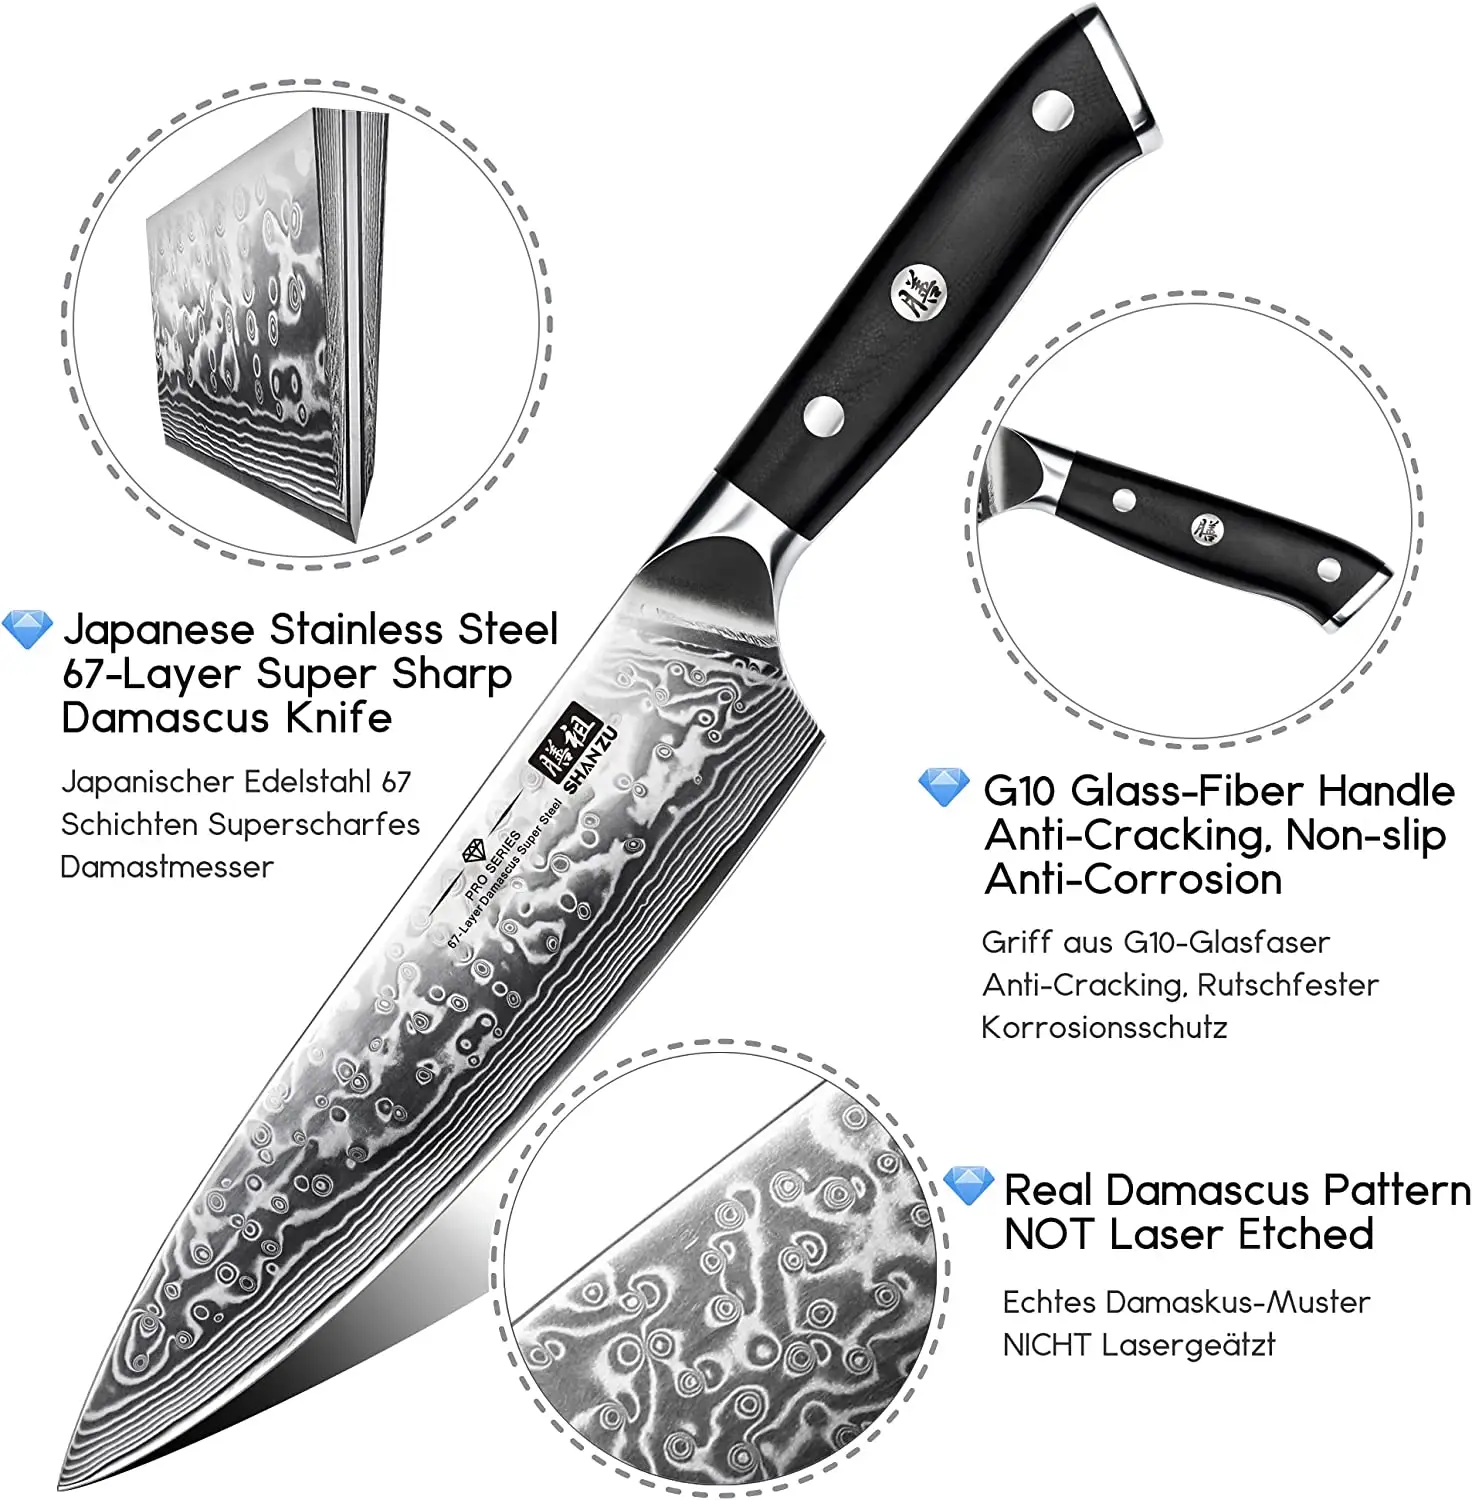 تصميم جديد G10 سكين طاه ياباني 1015mov 67 طبقات مسحوق دمشقي سكاكين مطبخ صلب مع صندوق هدايا مقبض VG10